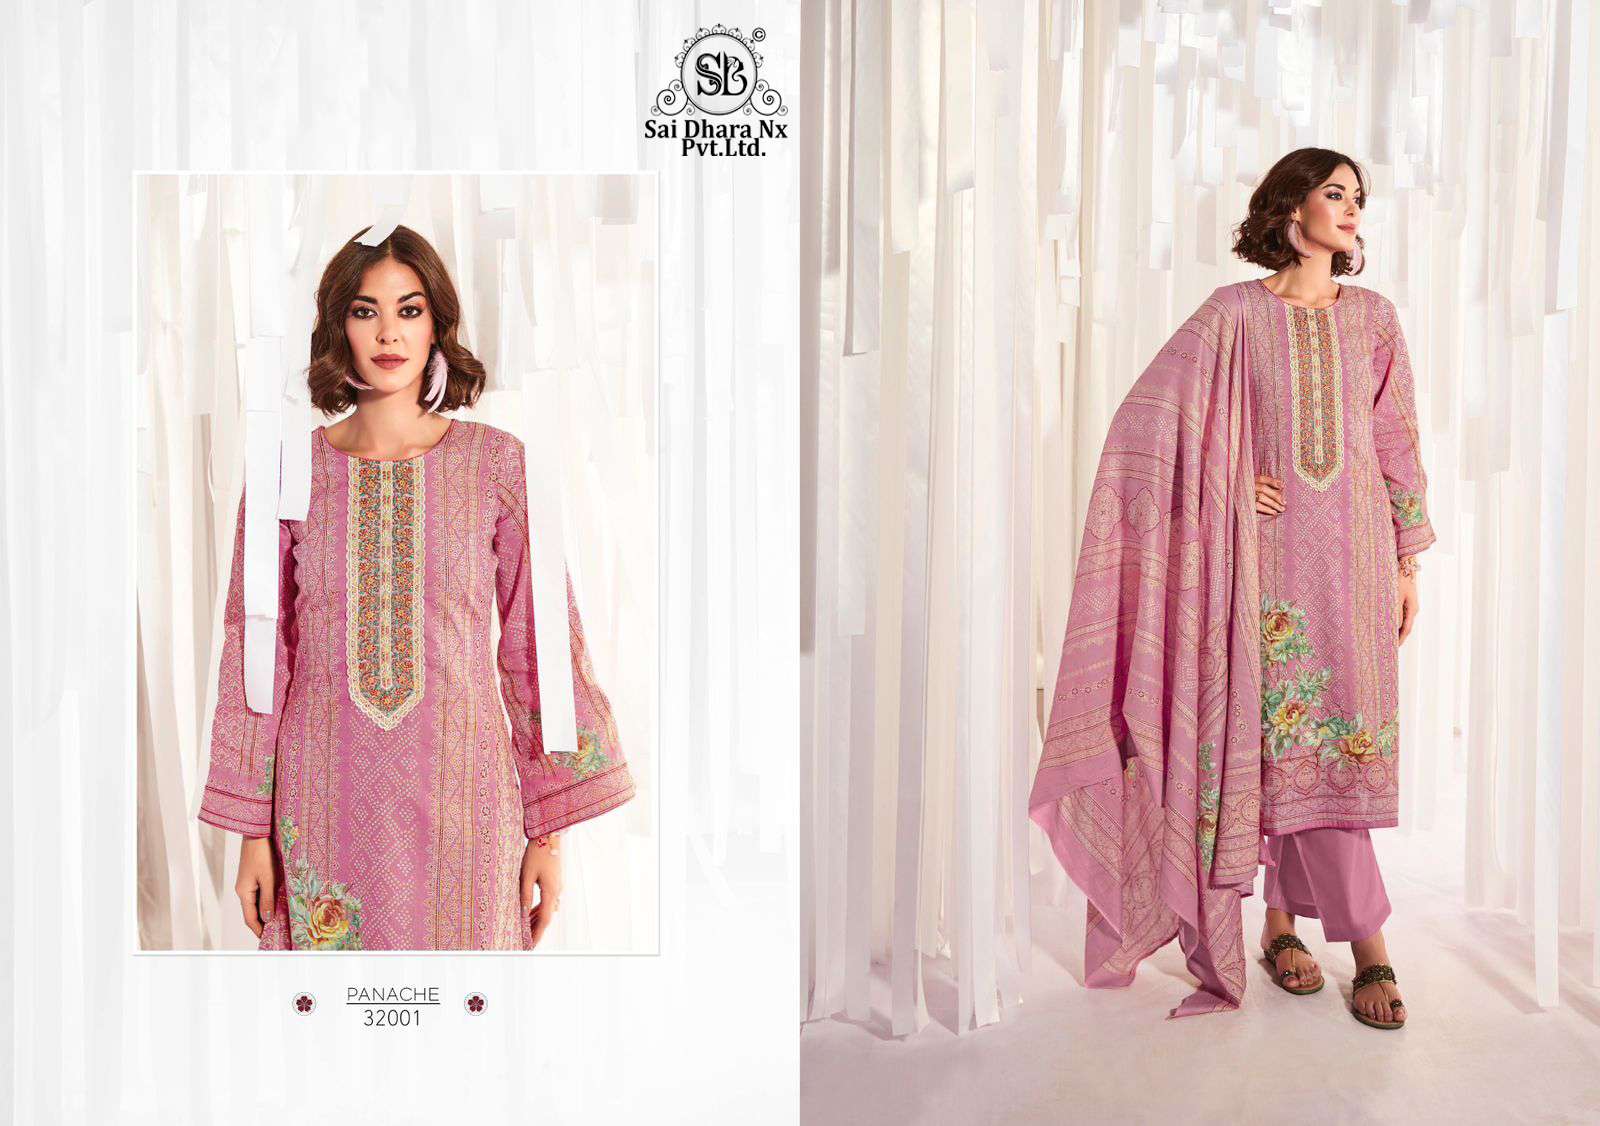 Mumtaz art present latest lawn cotton pakistani 3 piece suits Wholesale Shop In surat - SaiDharaNx